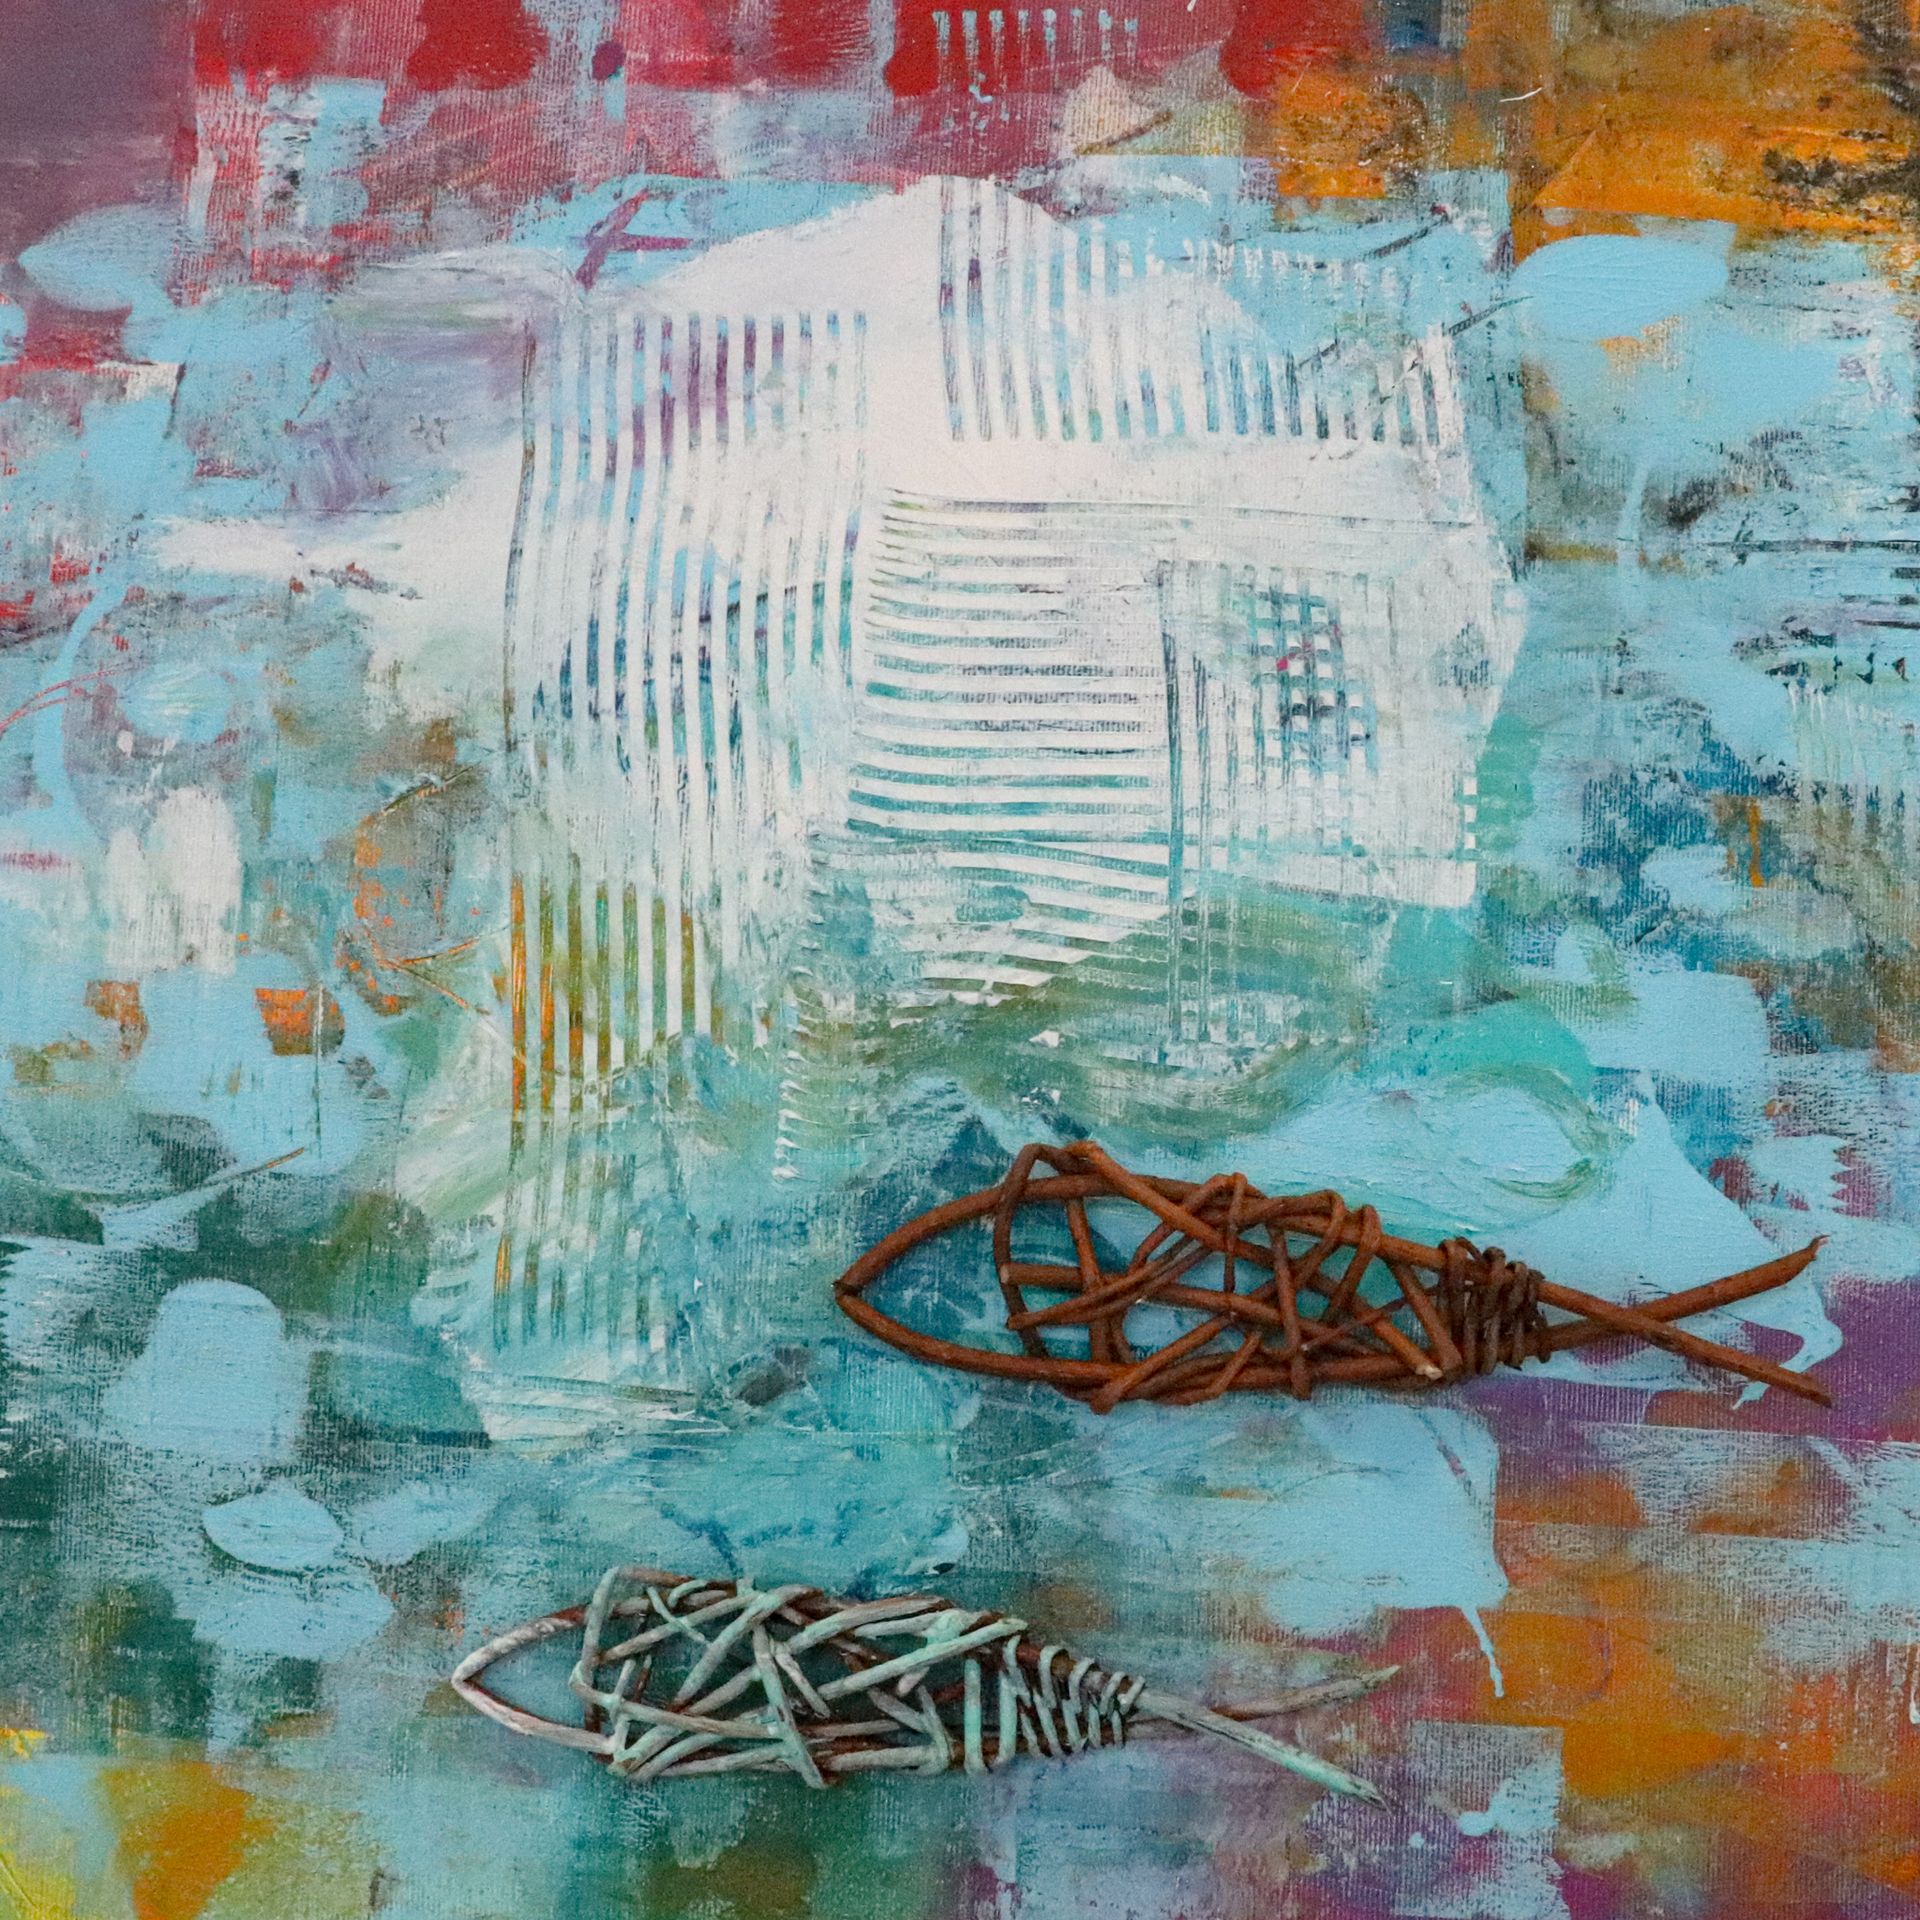 Das Bild zeigt eine abstrakte Komposition mit unterschiedlichen Materialien wie Farbe, Weidengeflecht, Spachtelmasse